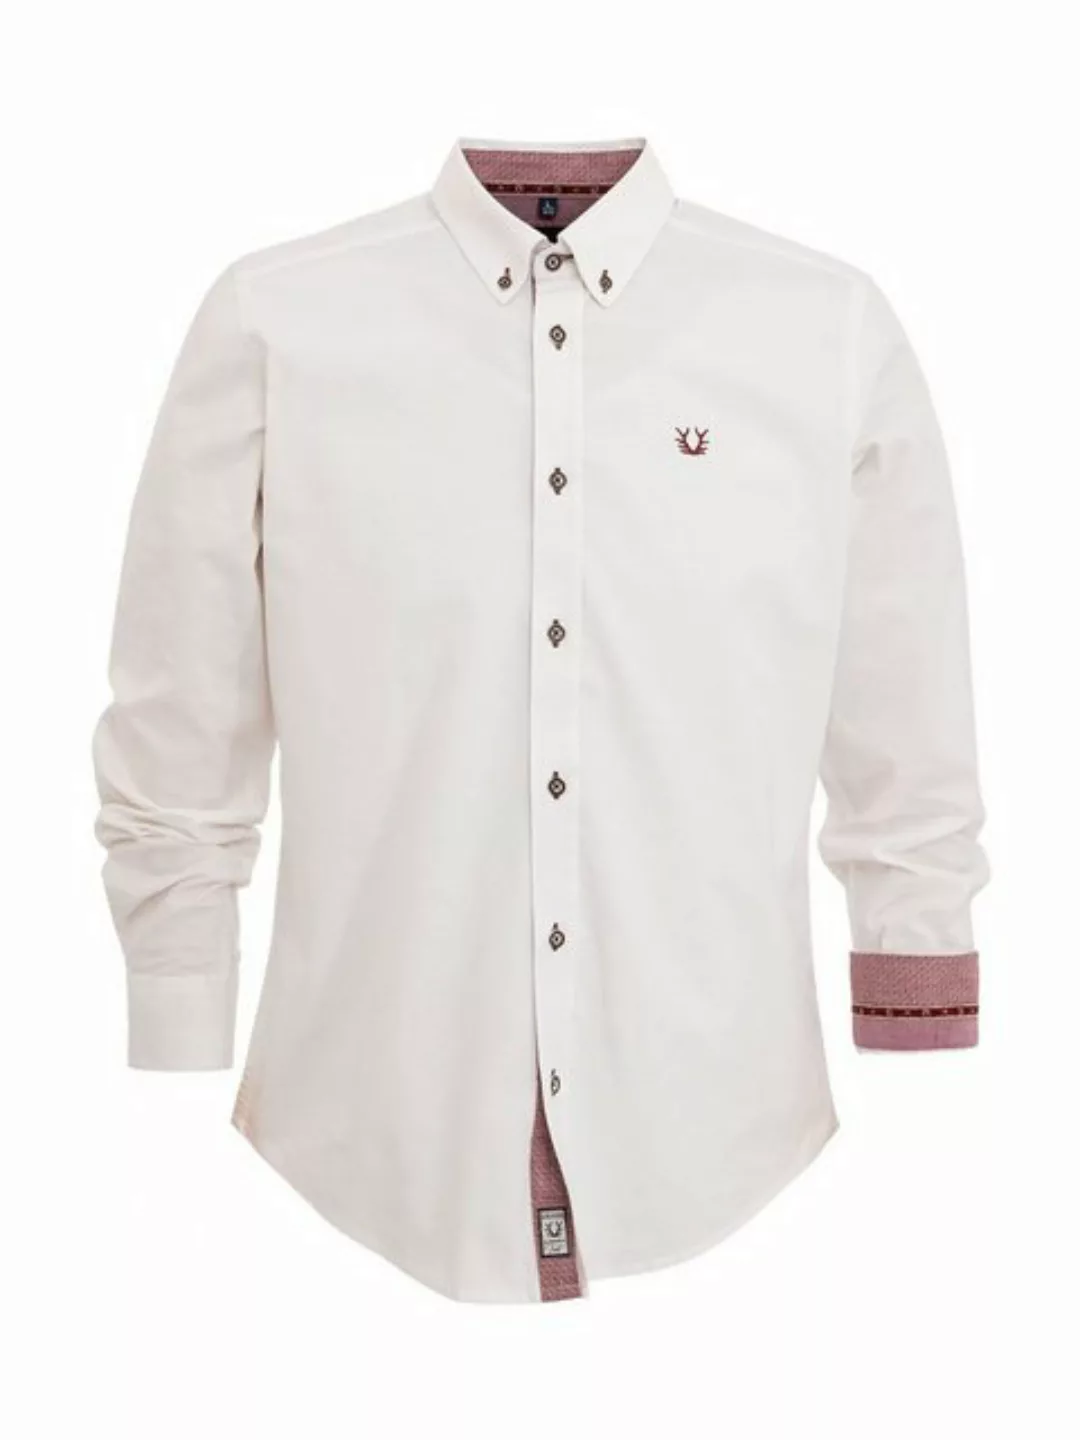 KRÜGER MADL & BUAM Trachtenhemd Hemd 912867 weiß rot (Perfekt Fit) günstig online kaufen